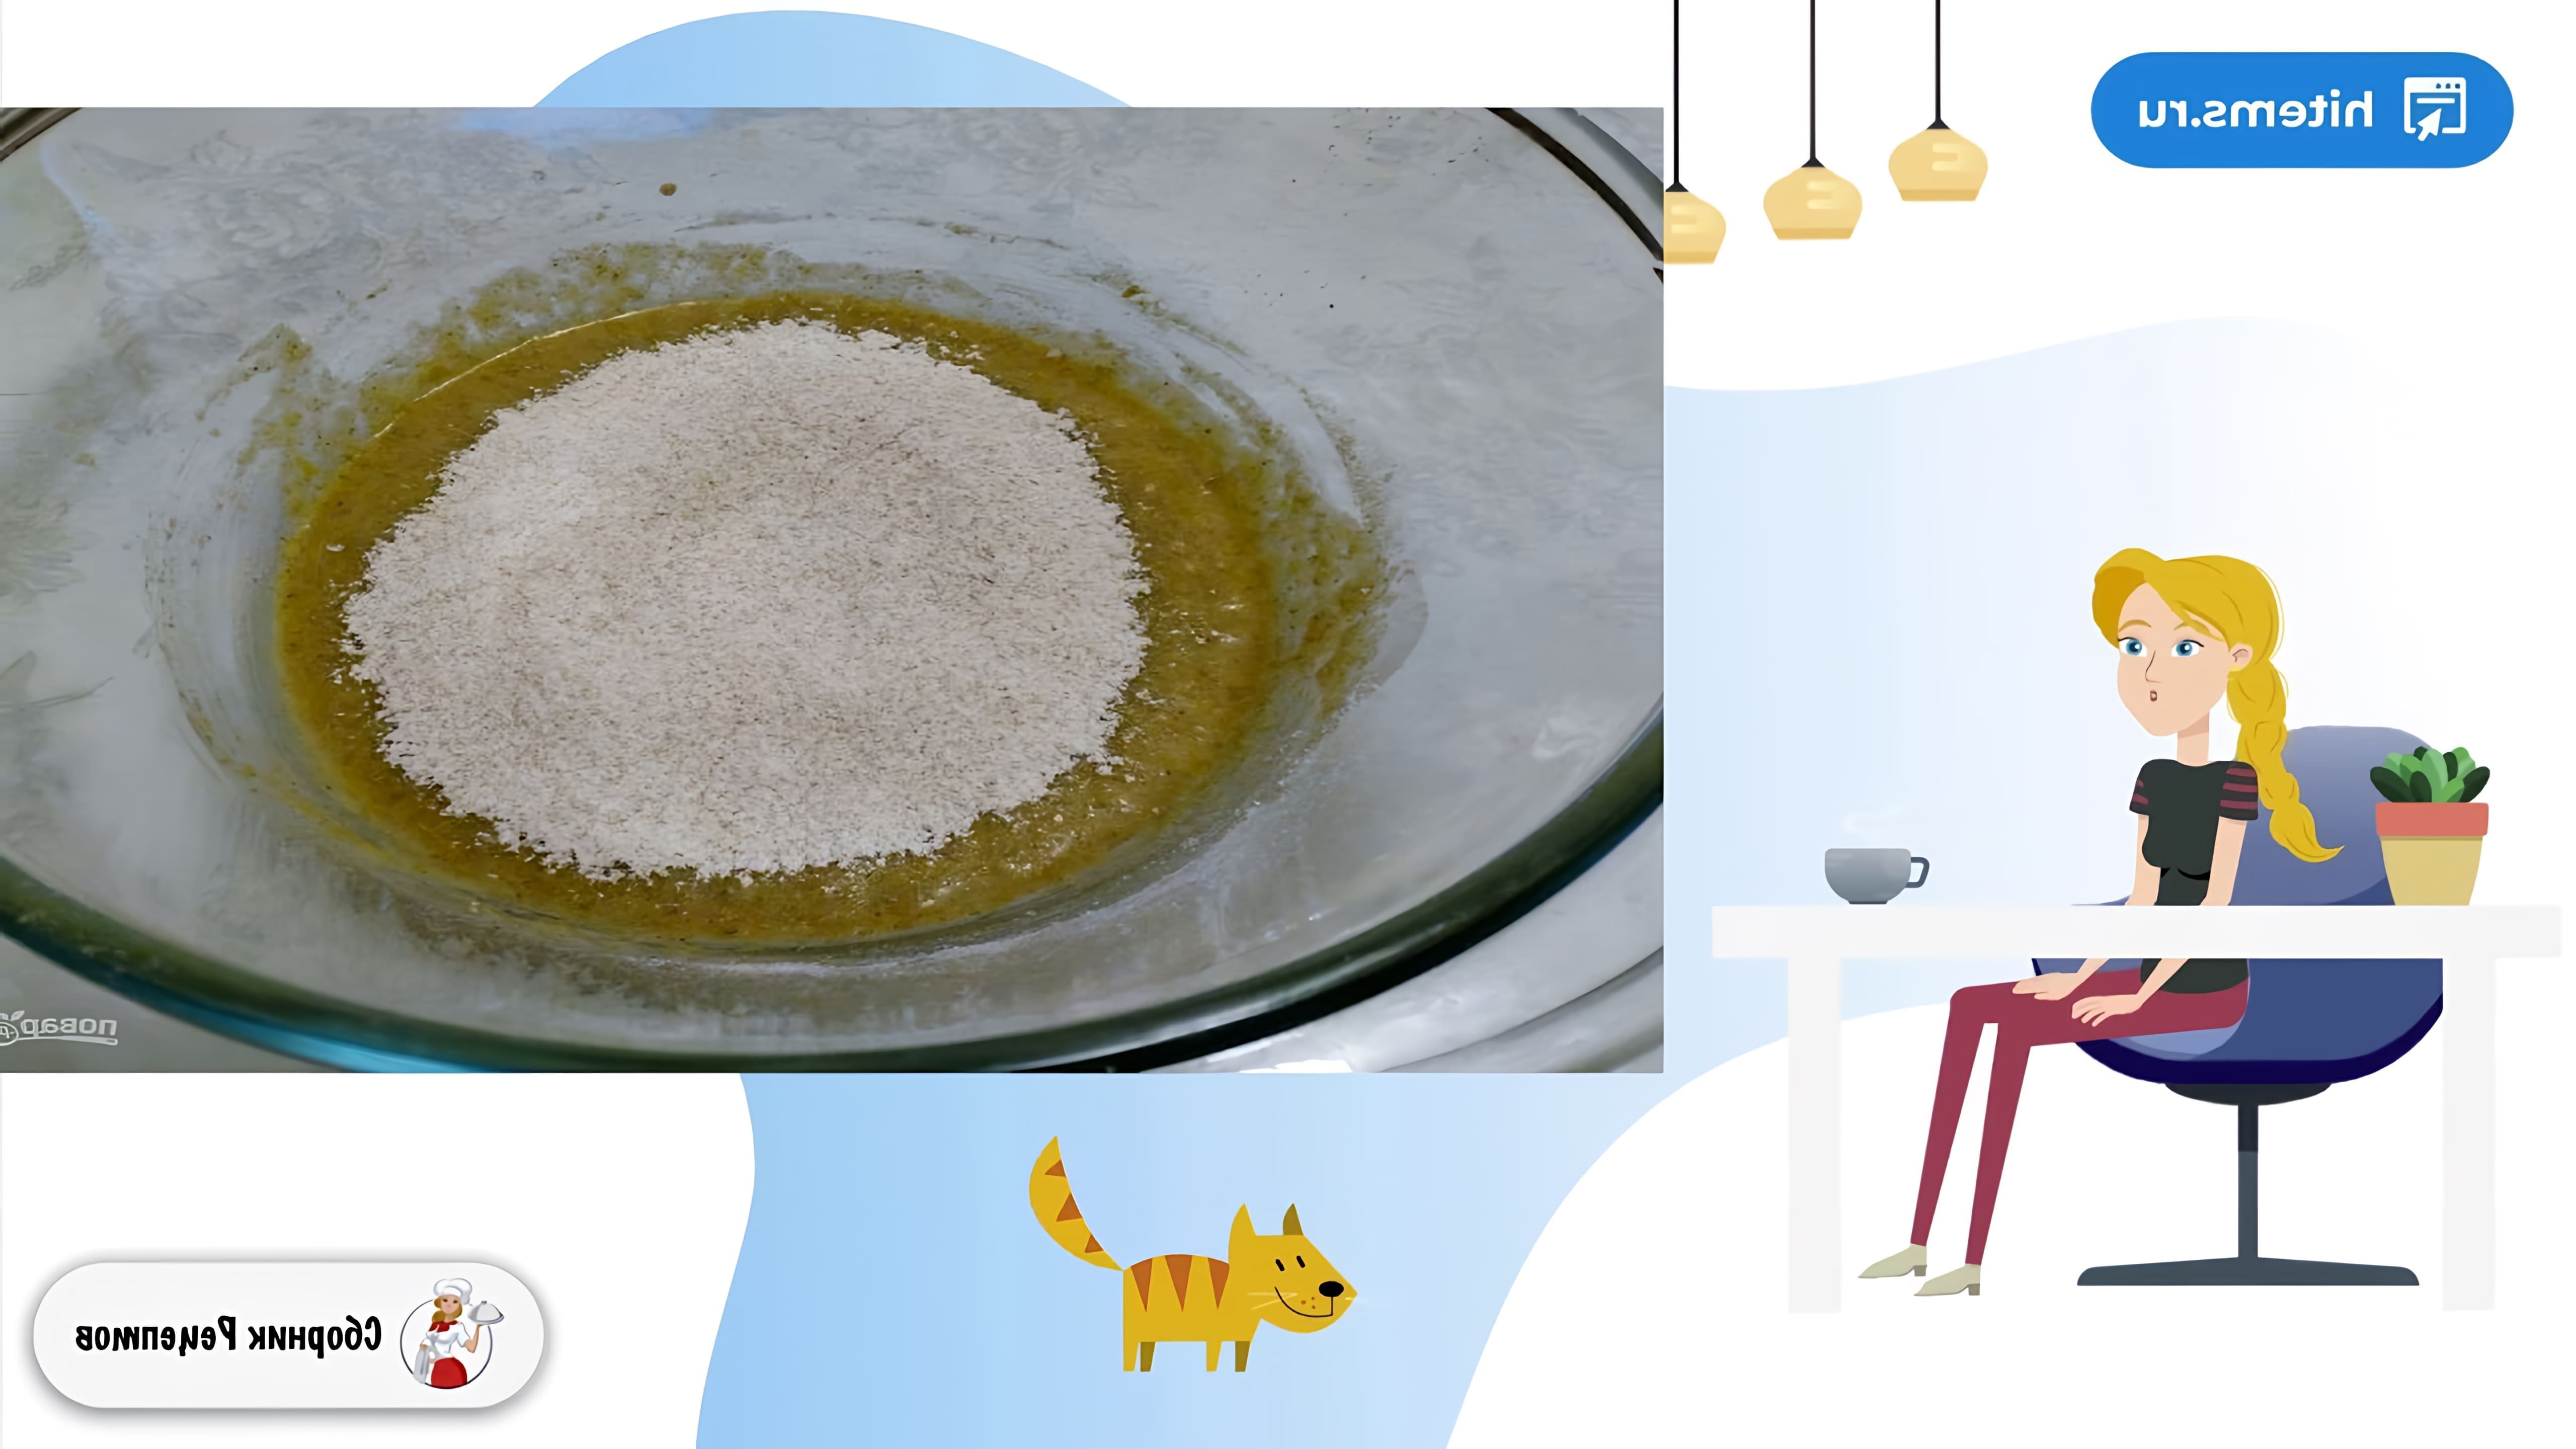 В этом видео демонстрируется рецепт приготовления сладких ржаных коржиков